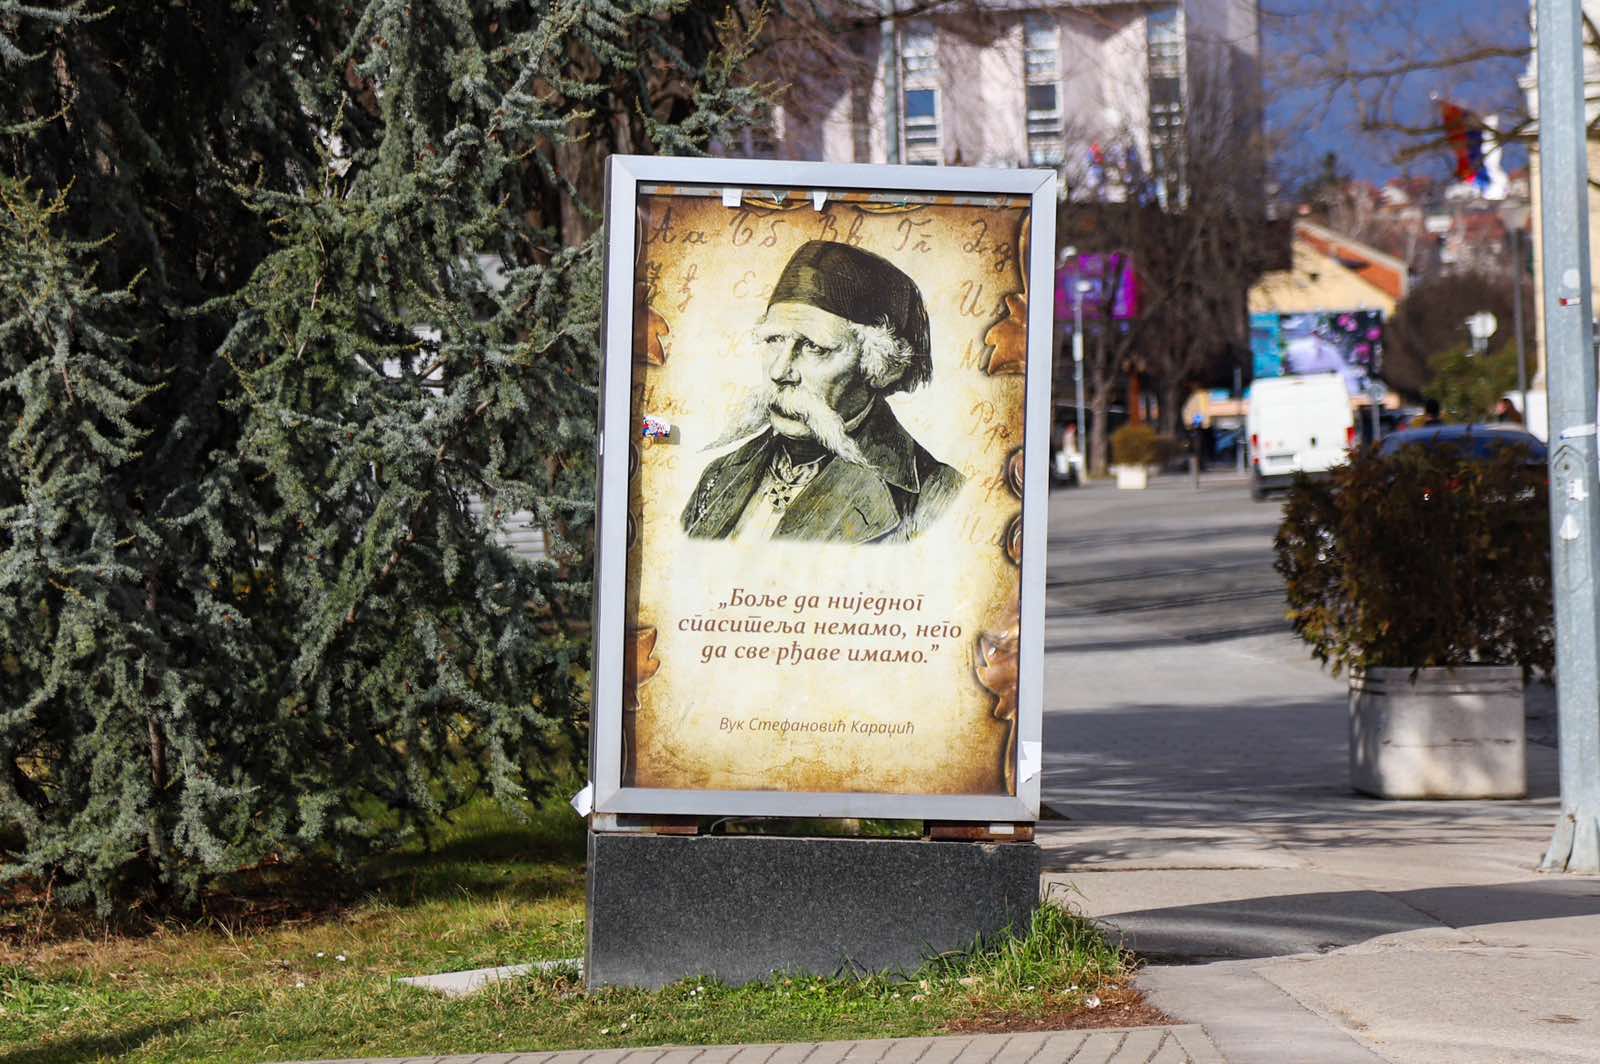 Danas 160 godina od smrti velikana: Poruke Vuka Karadžića na bilbordima u Banjaluci (FOTO)